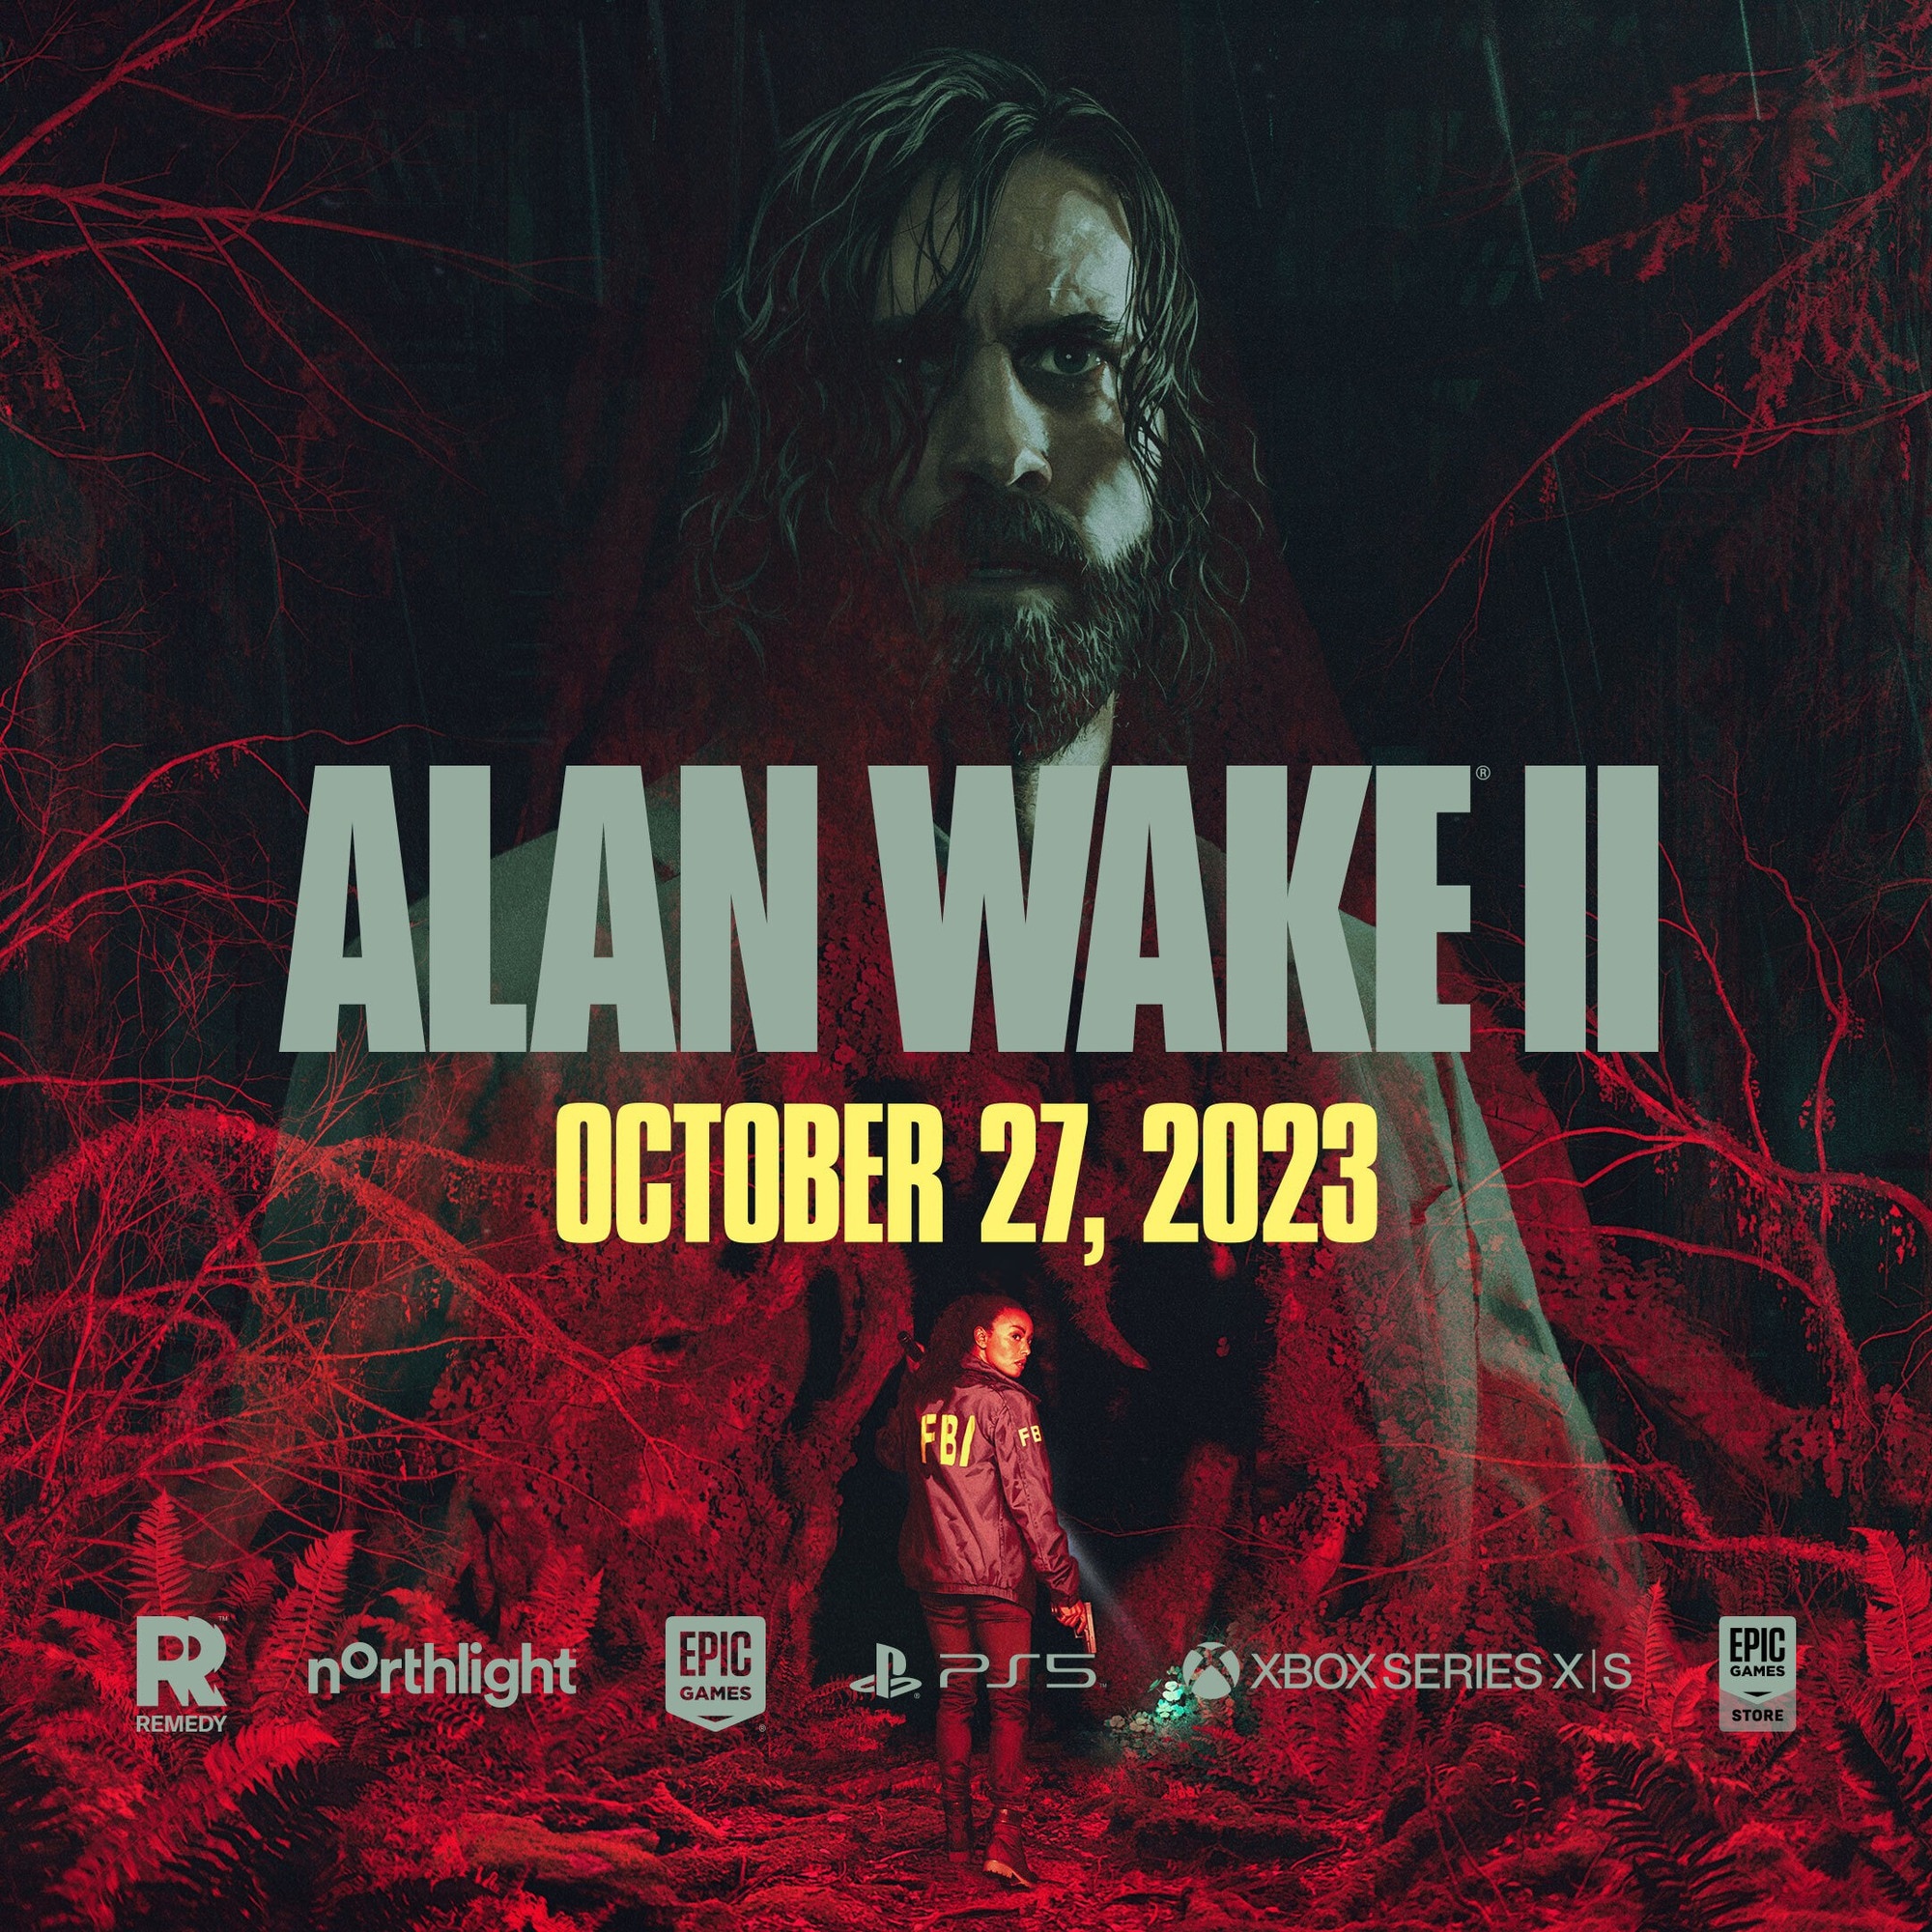 'Alan Wake II' bị lùi ngày phát hành - Ảnh 1.